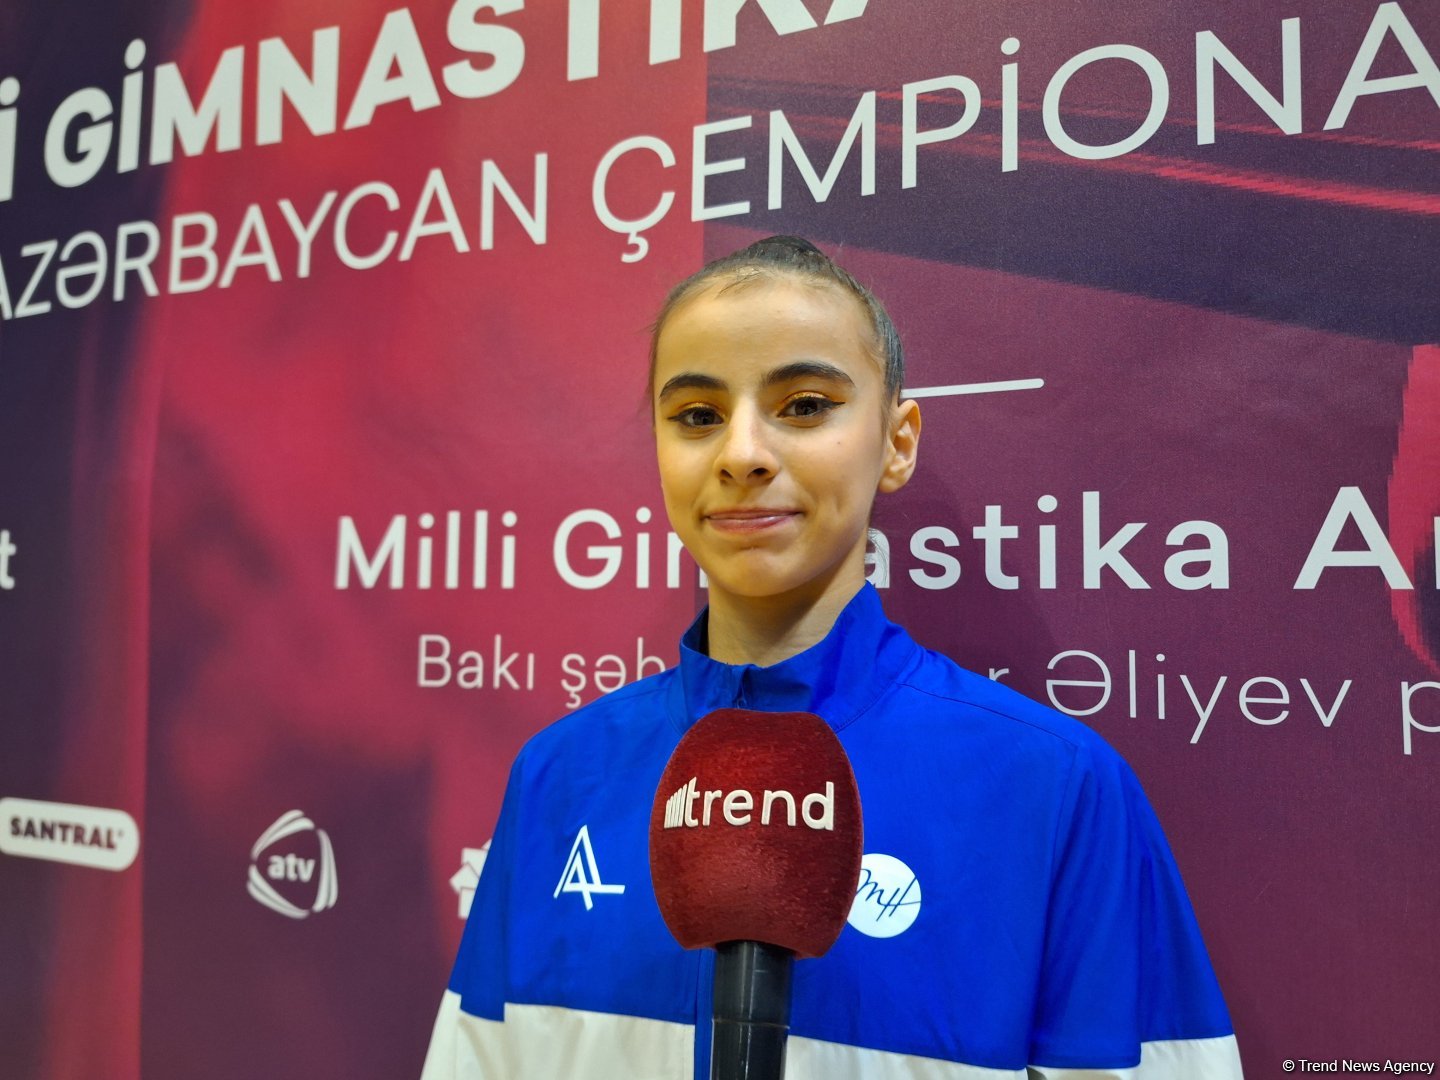 Медаль в индивидуальном многоборье очень меня вдохновила – призер чемпионата Азербайджана по художественной гимнастике